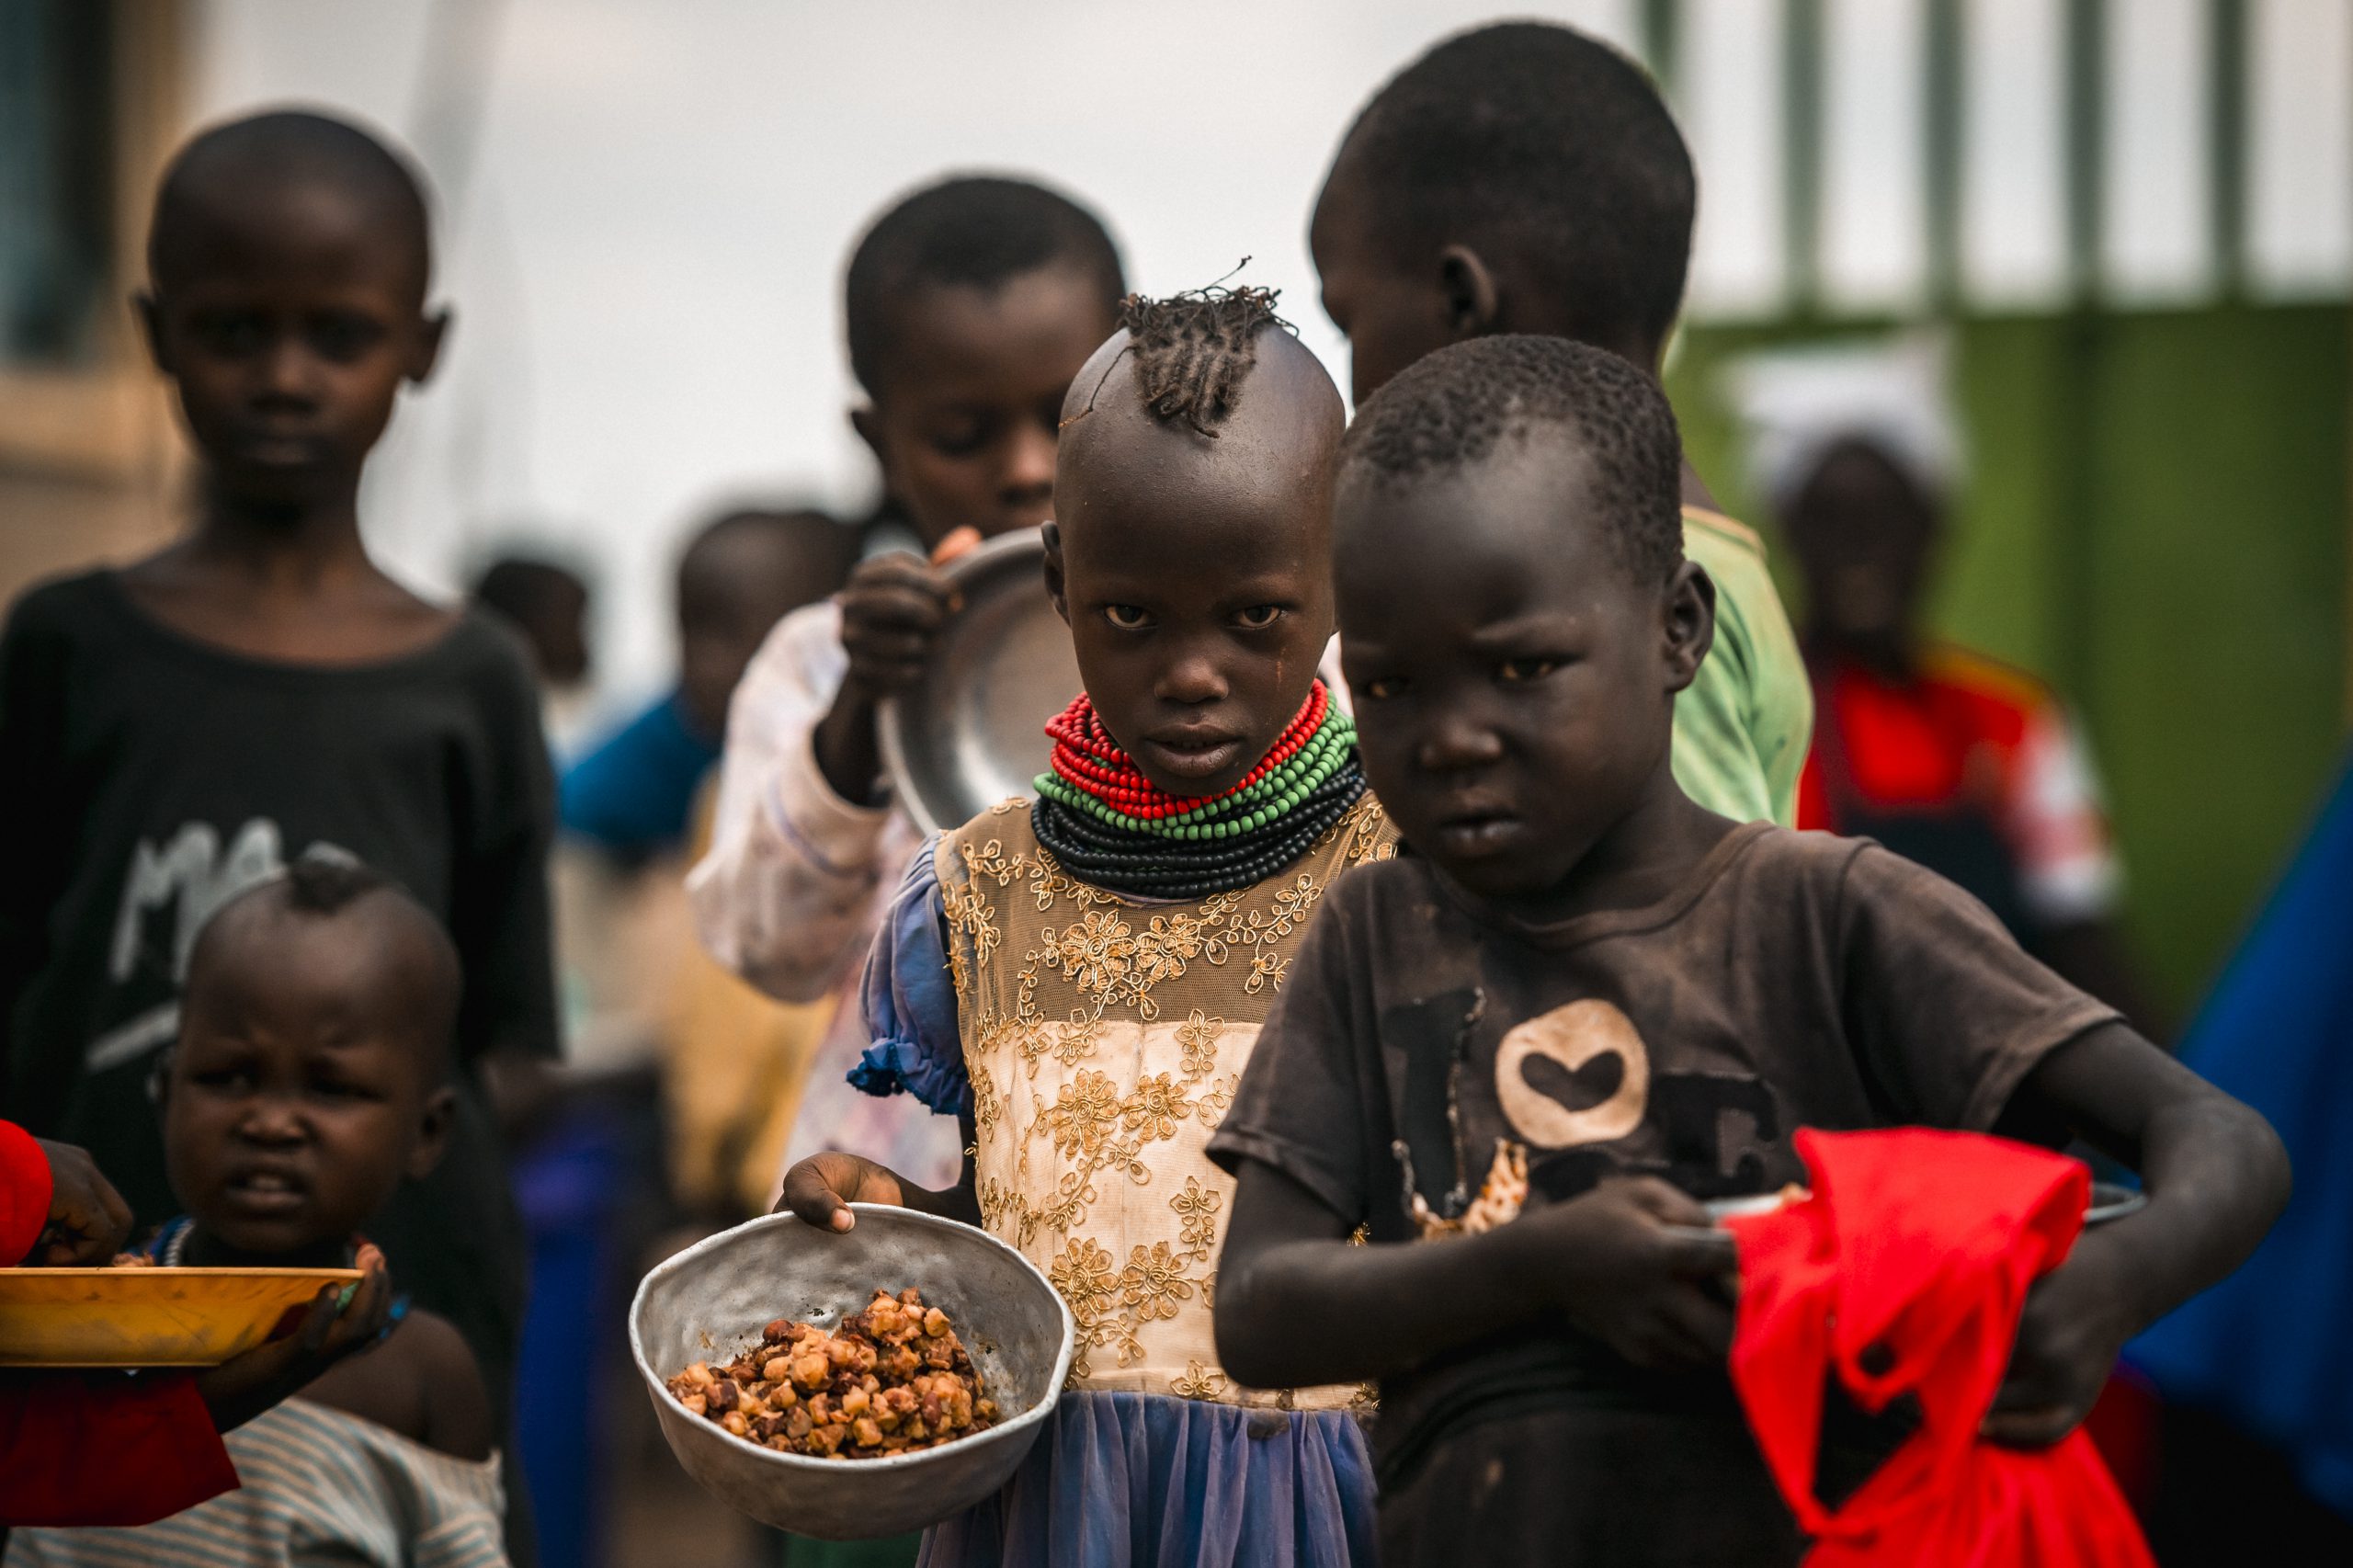 Kenyan children hold bowls of food